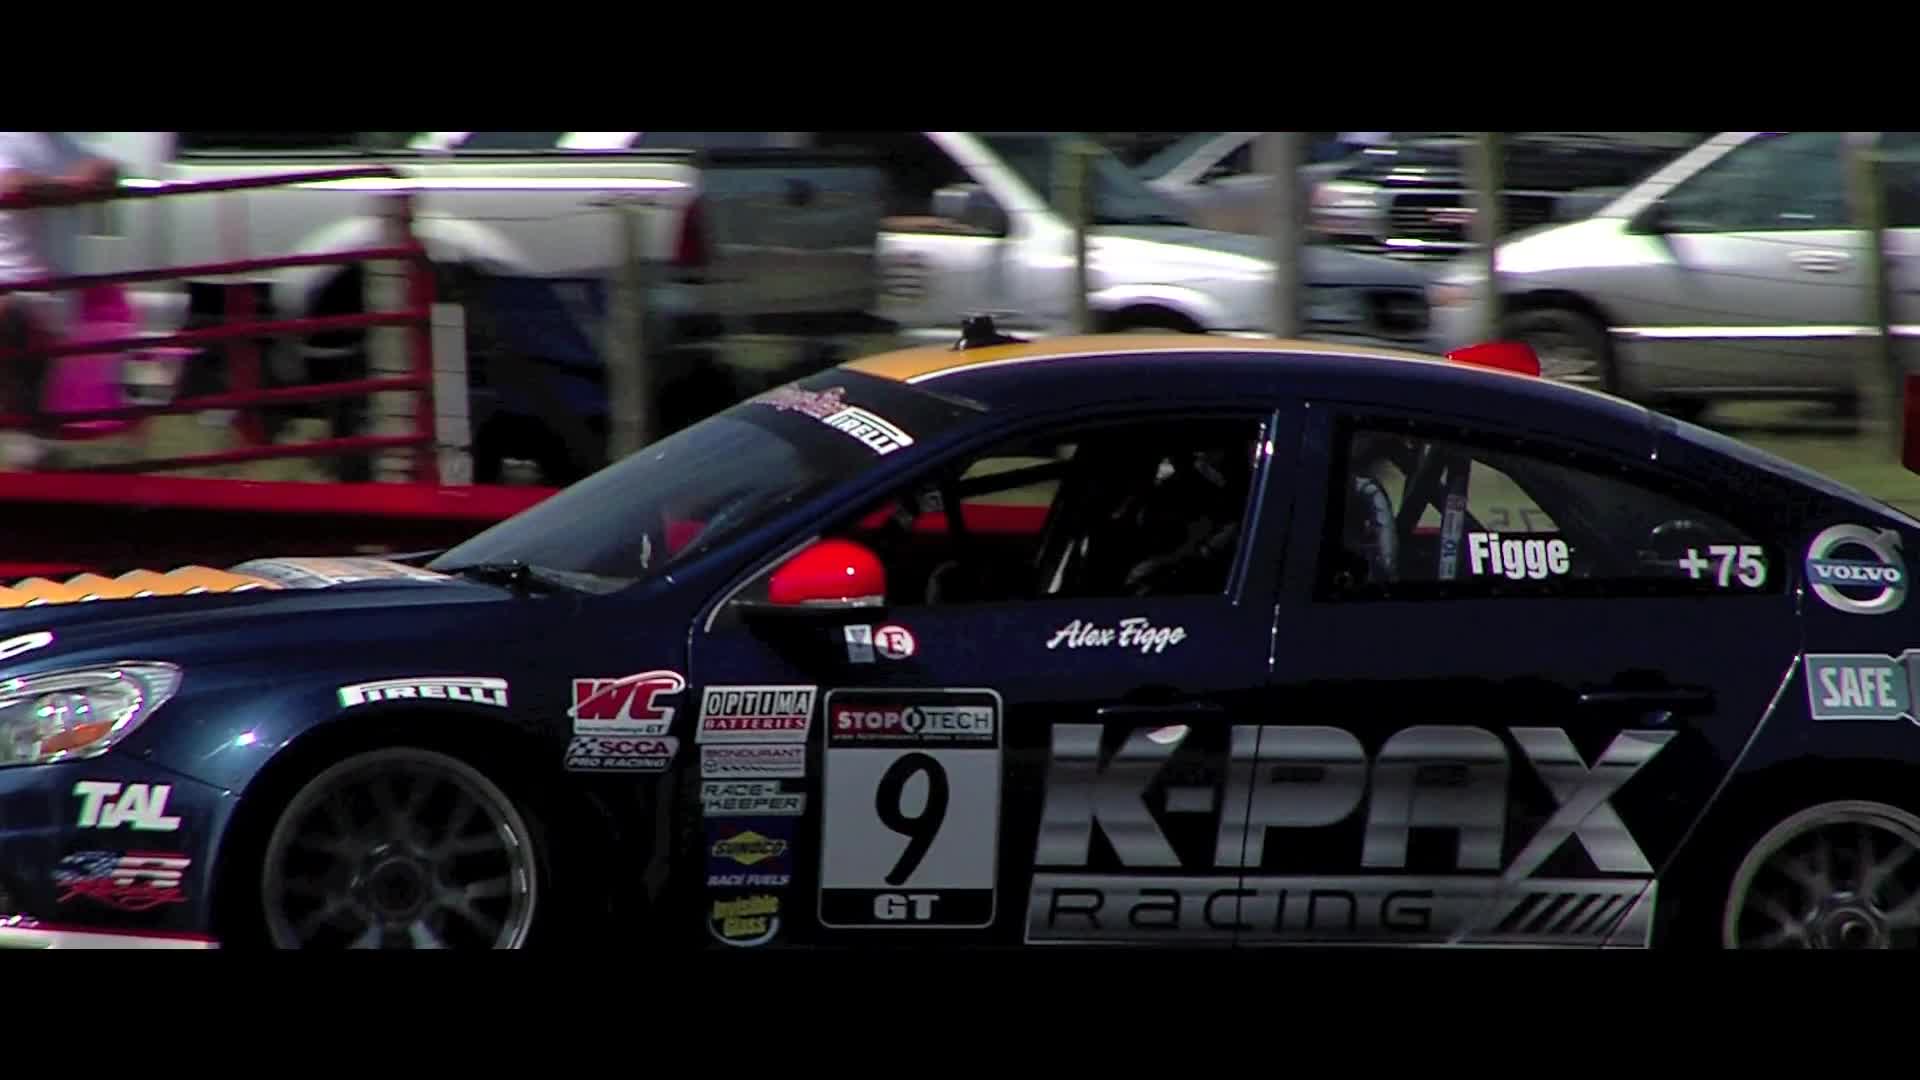 KPAX Racing Mid Ohio 2011